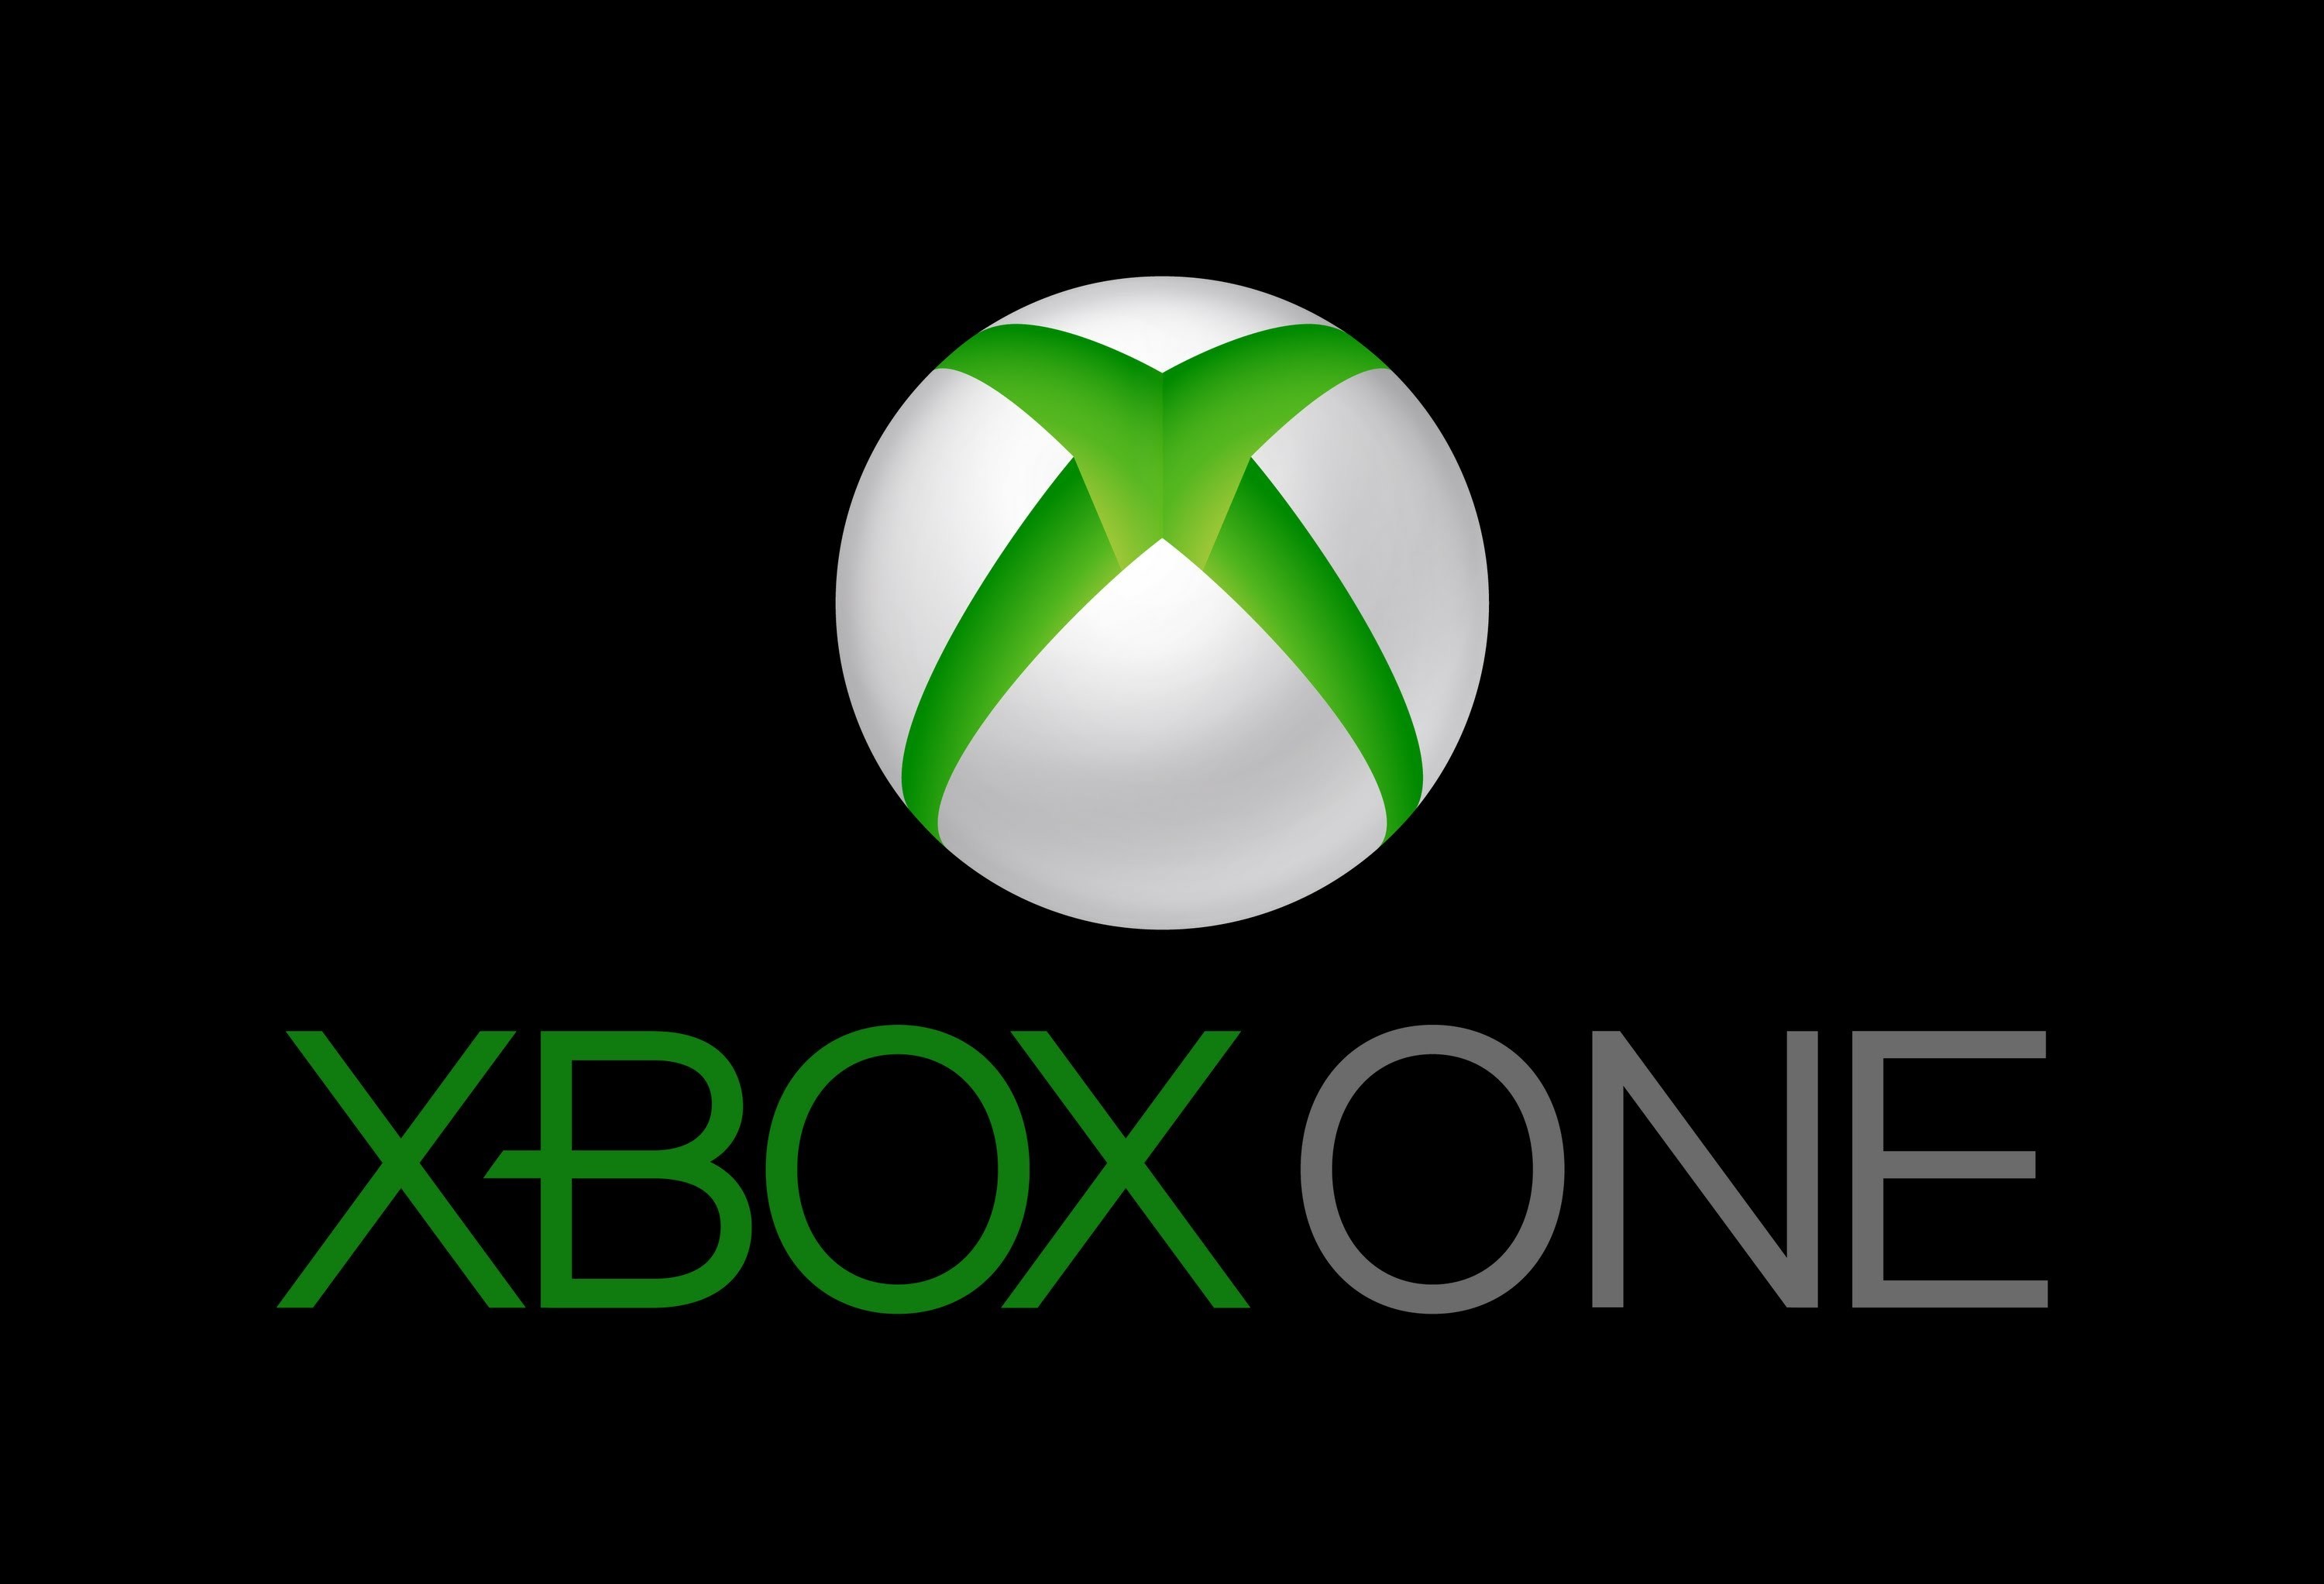 3000x2045 Xbox logo - Xbox one hd logo wallpaper - Xbox one logo - Xbox One .